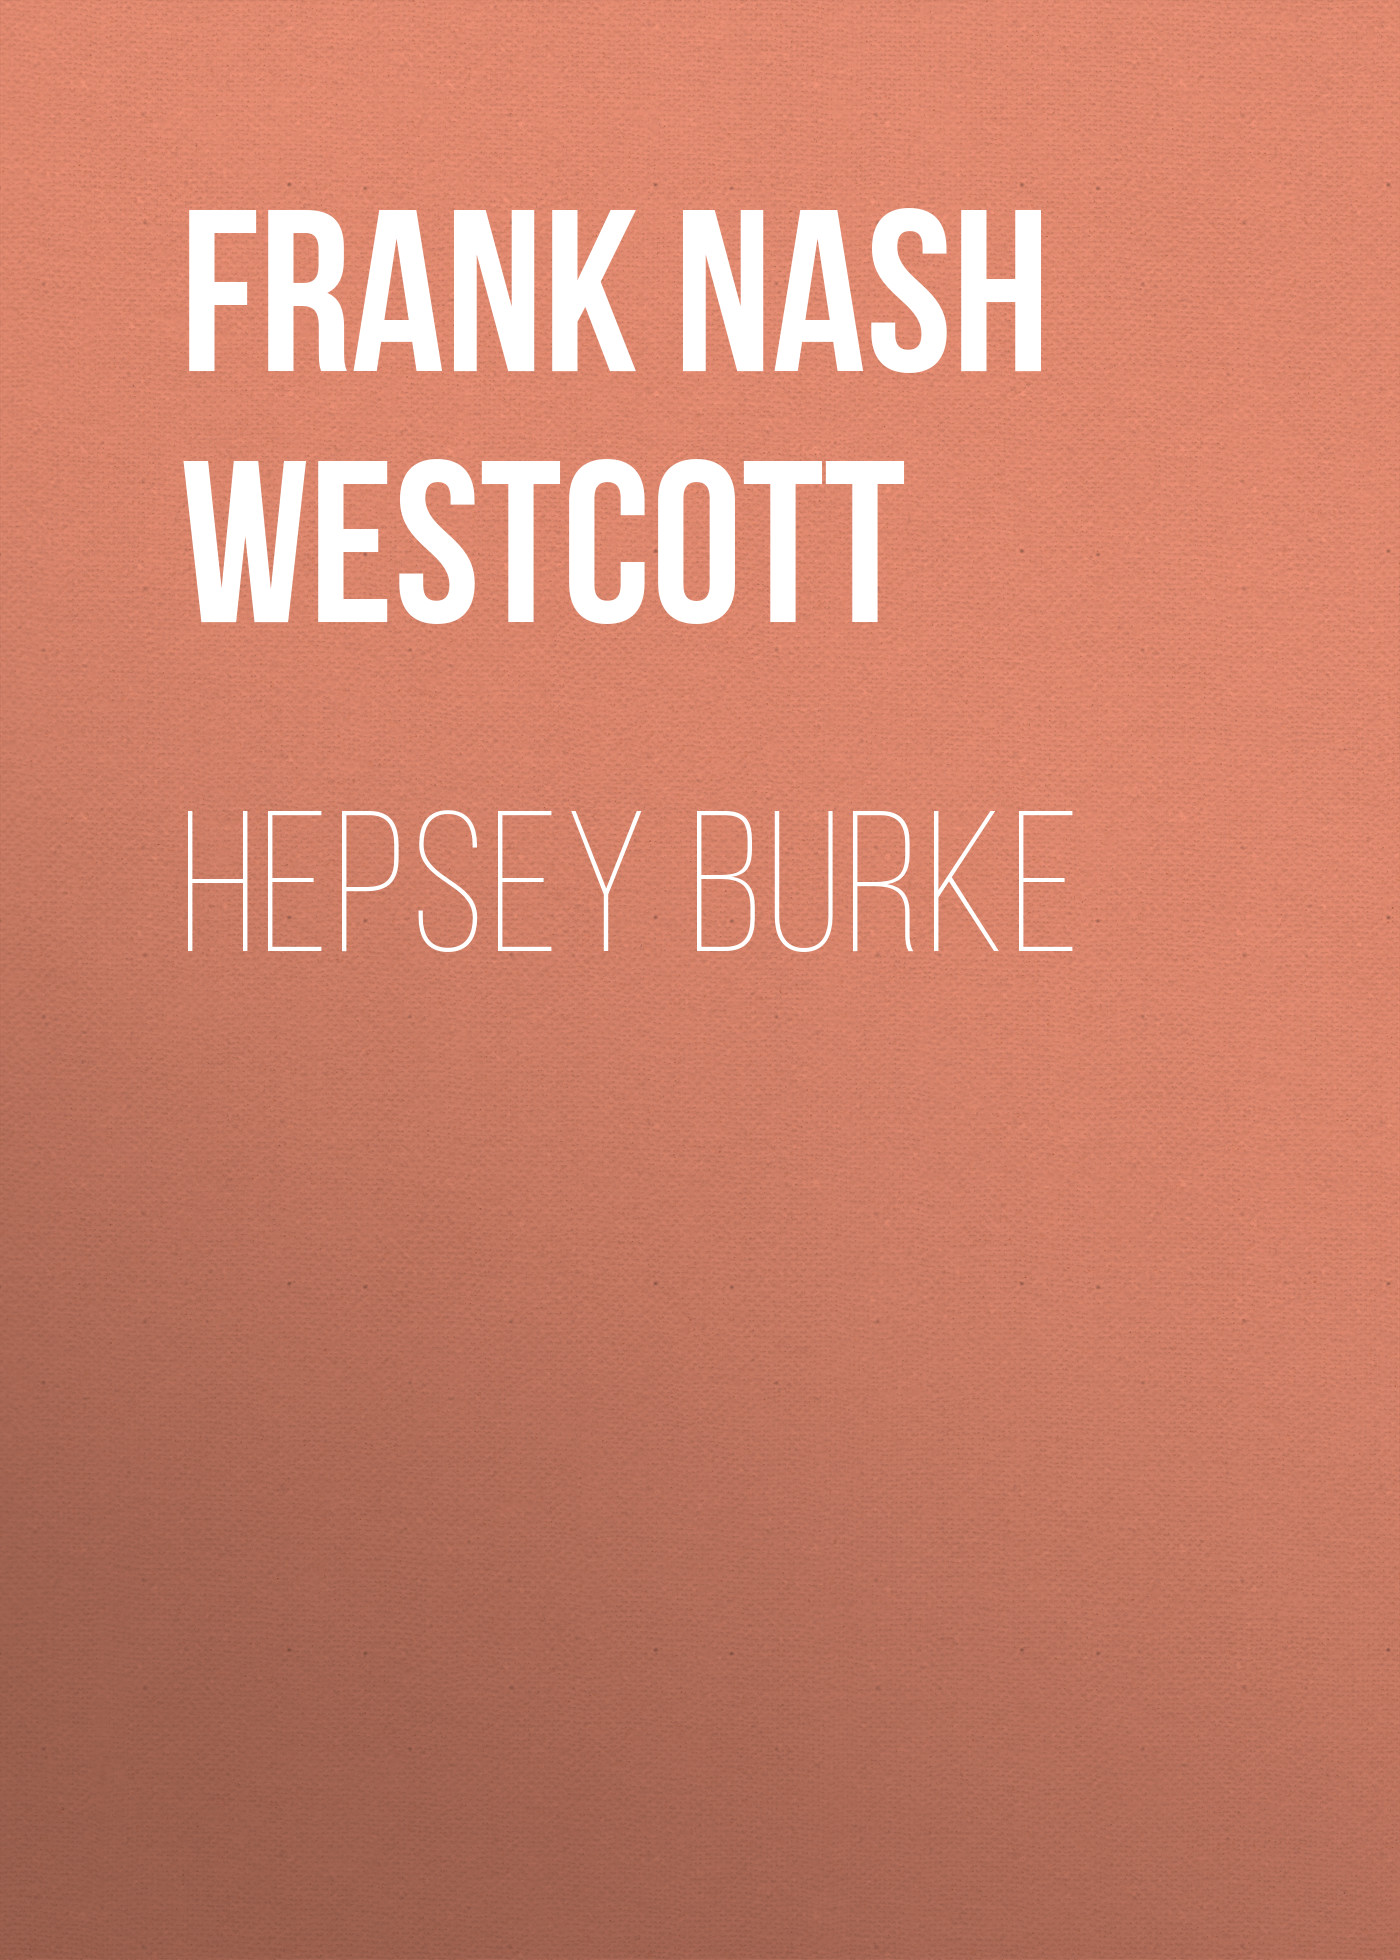 Книга Hepsey Burke из серии , созданная Frank Nash Westcott, может относится к жанру Зарубежная классика, Зарубежная старинная литература. Стоимость электронной книги Hepsey Burke с идентификатором 34337658 составляет 0 руб.